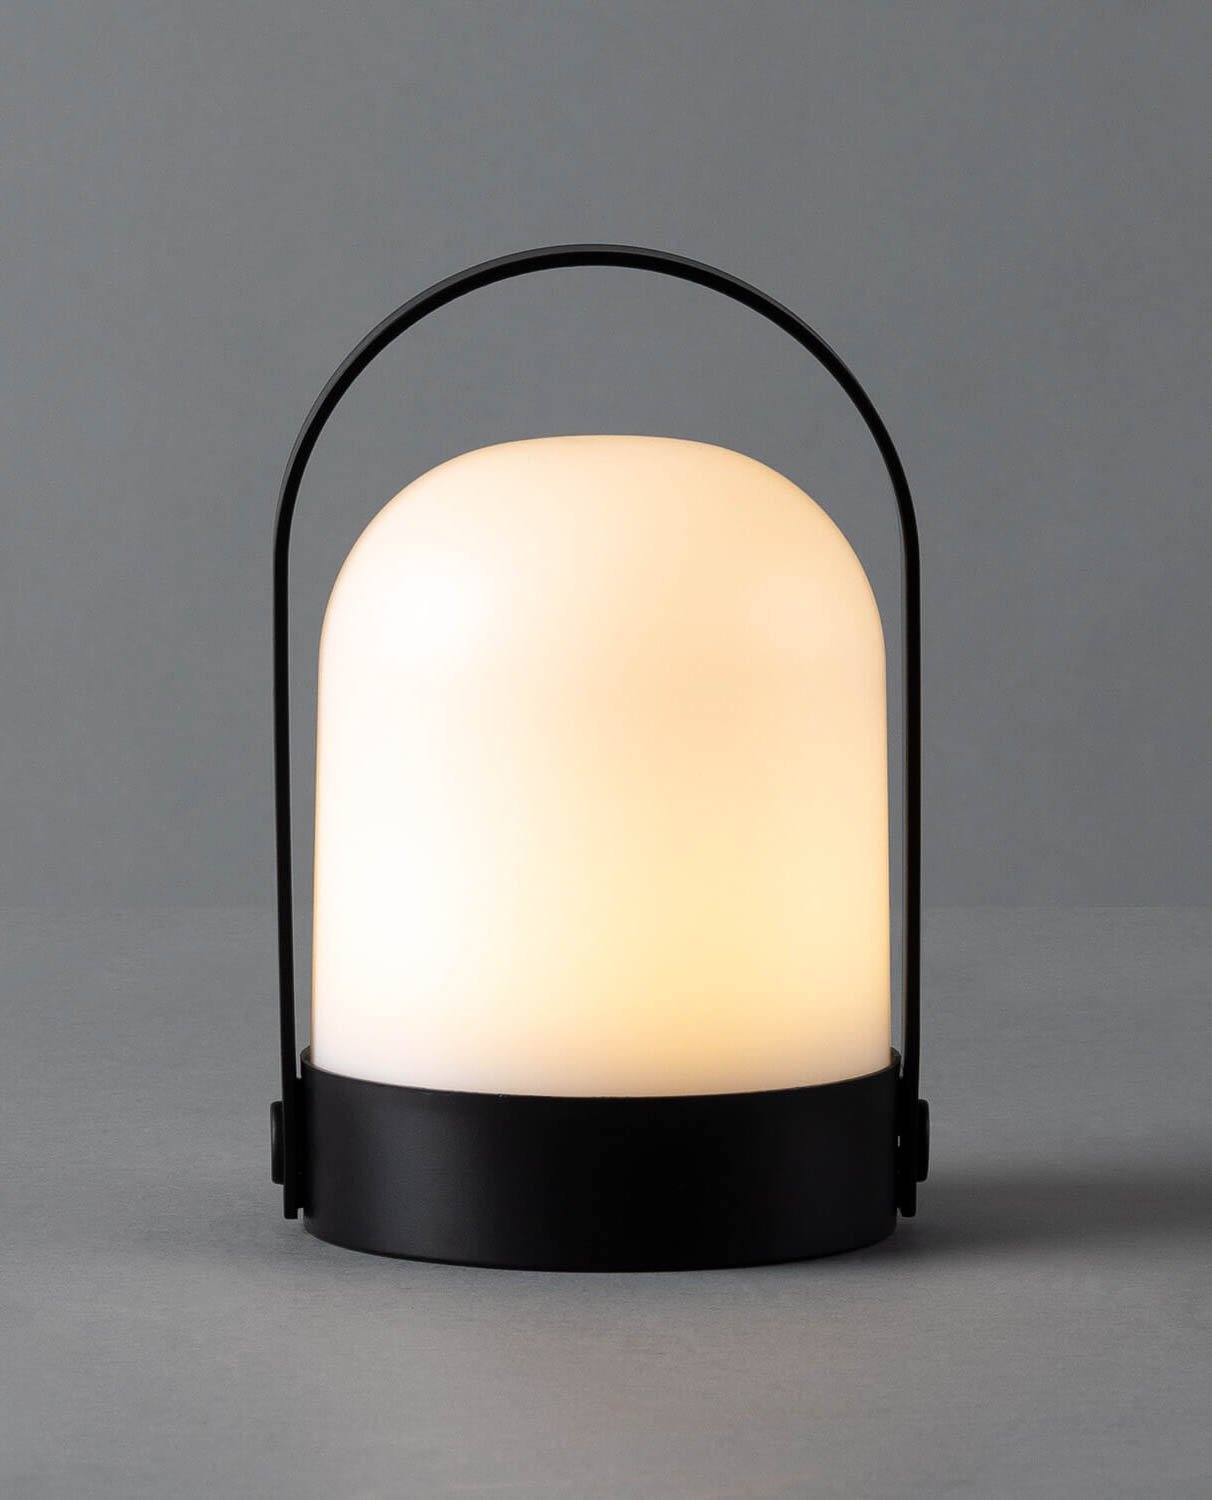 Lampe de Table LED sans Fil pour l'Extérieur  Bela, image de la gelerie 2